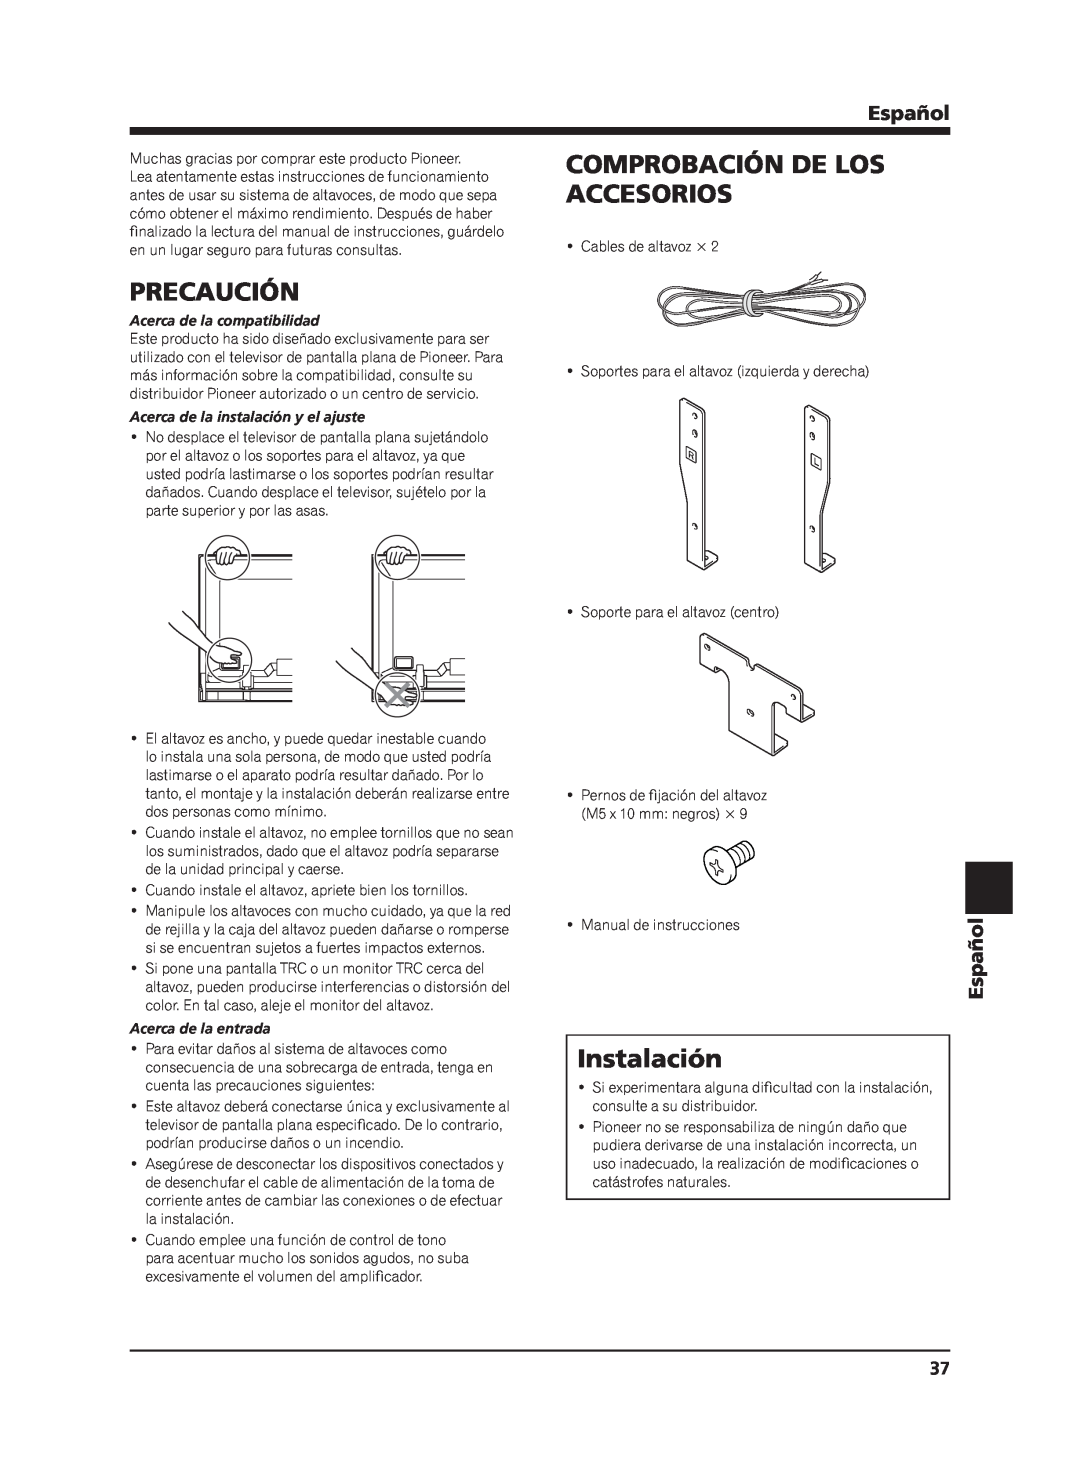 Pioneer PDP-S65 manual Accesorios, Precaución, Instalación, Comprobación De Los, Español, Acerca de la compatibilidad 